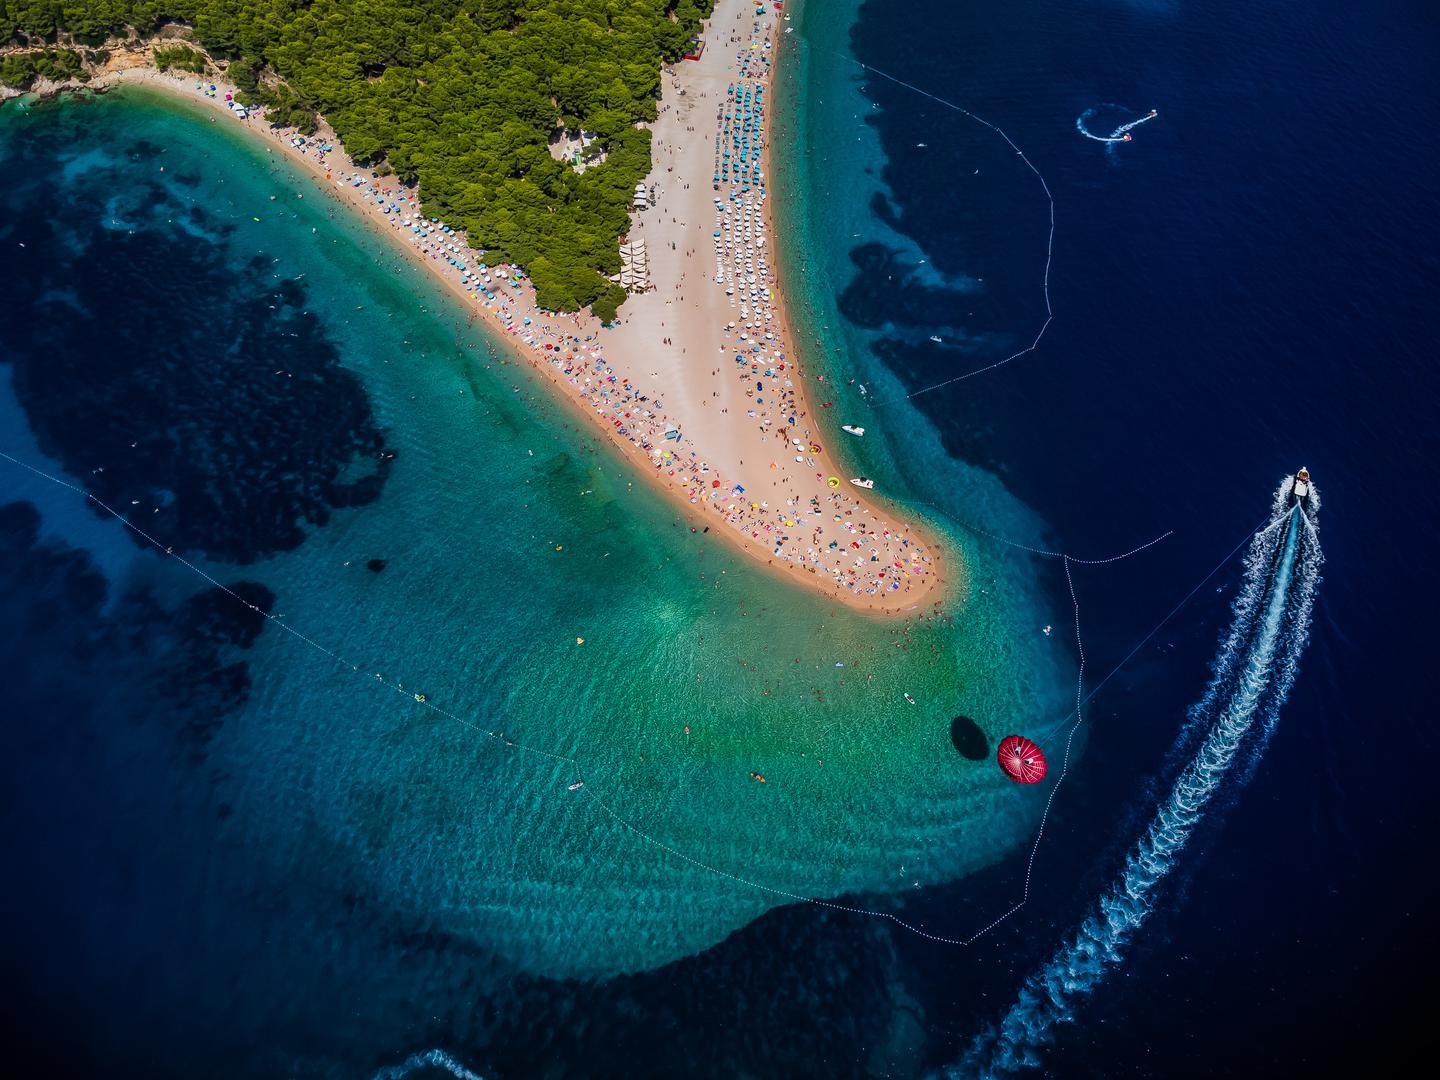 Plaža Zlatni rat u Bolu na otoku Braču također je ponos Hrvatske, a smatra je se jednim od simbola hrvatskog turizma. Ovaj šljunčani rt fenomen je u svakom smislu riječi, a čak je i zaštićen zakonom.

